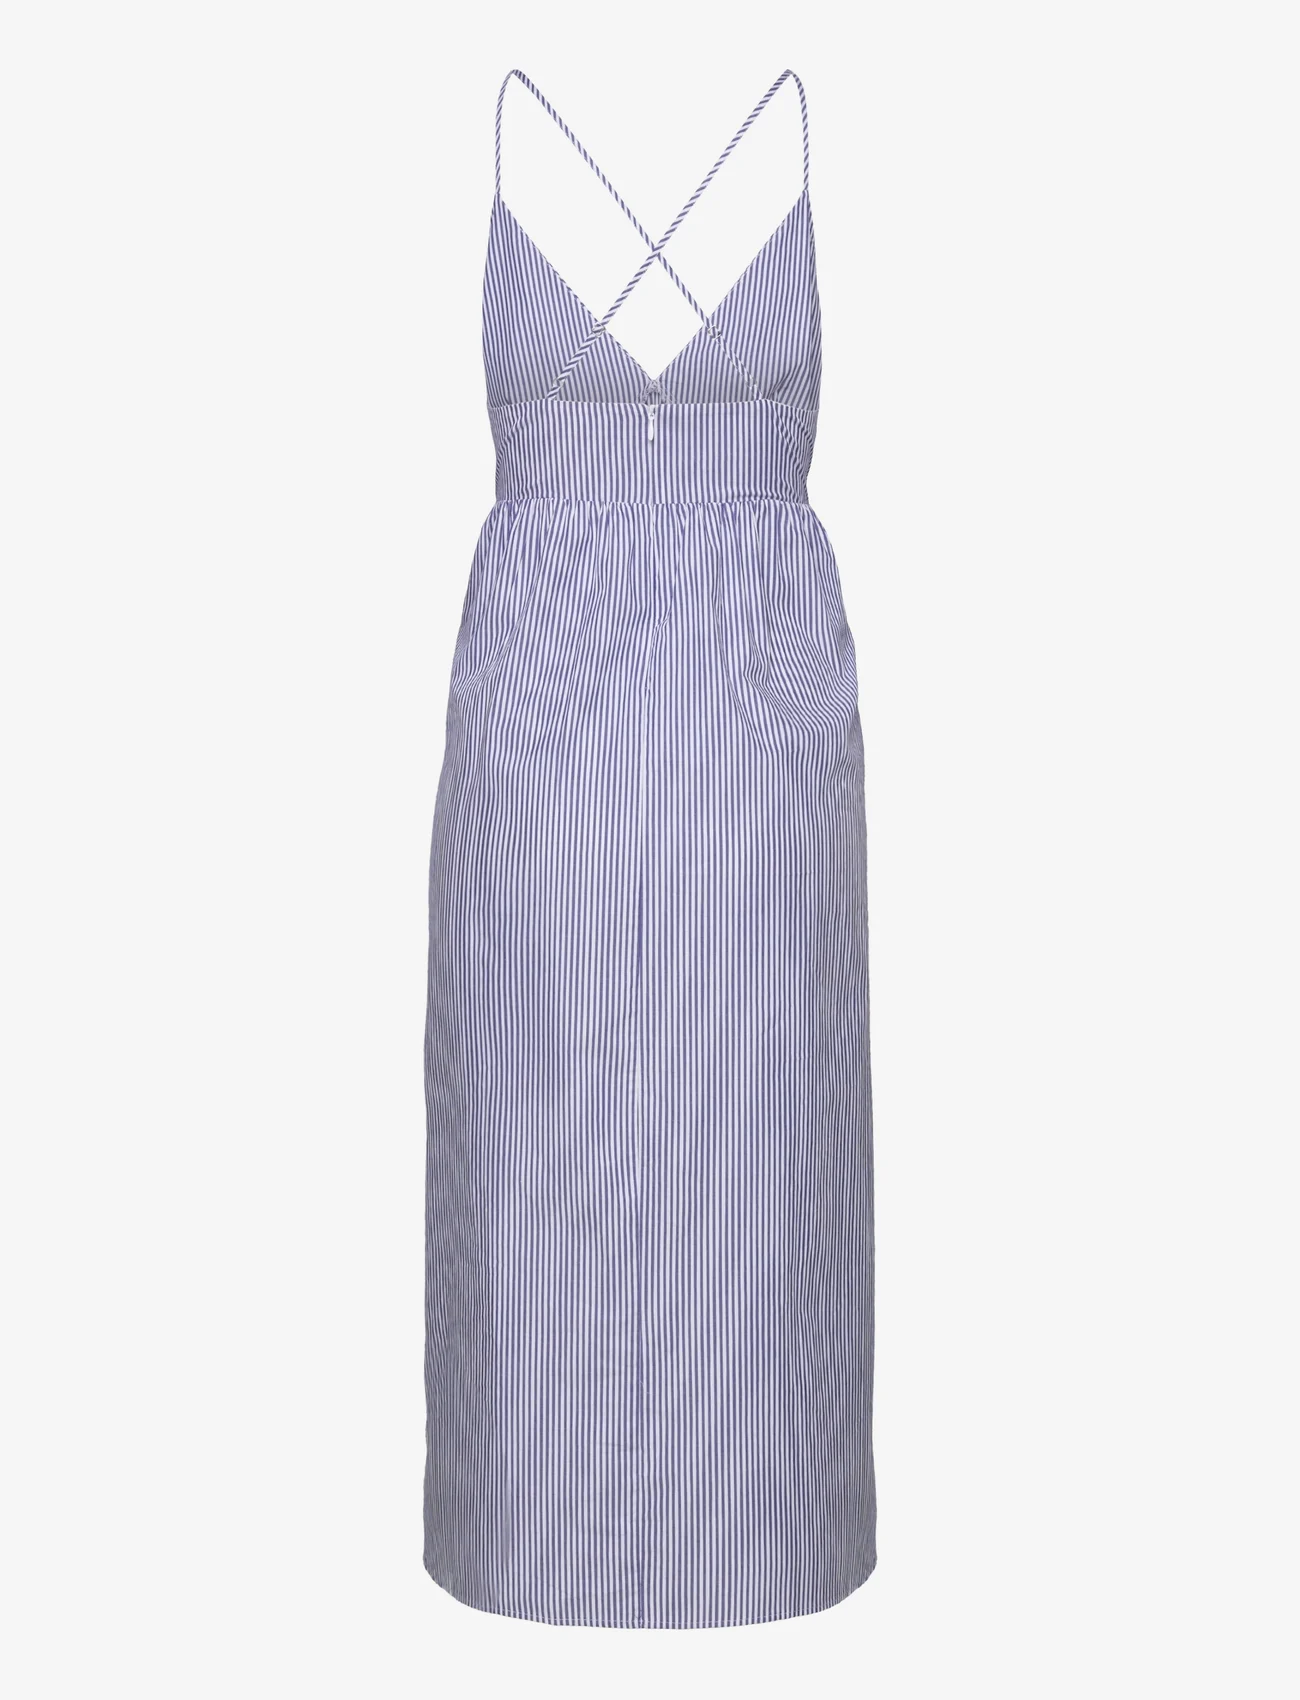 Mango - Cotton cross back dress - slip kjoler - navy - 1